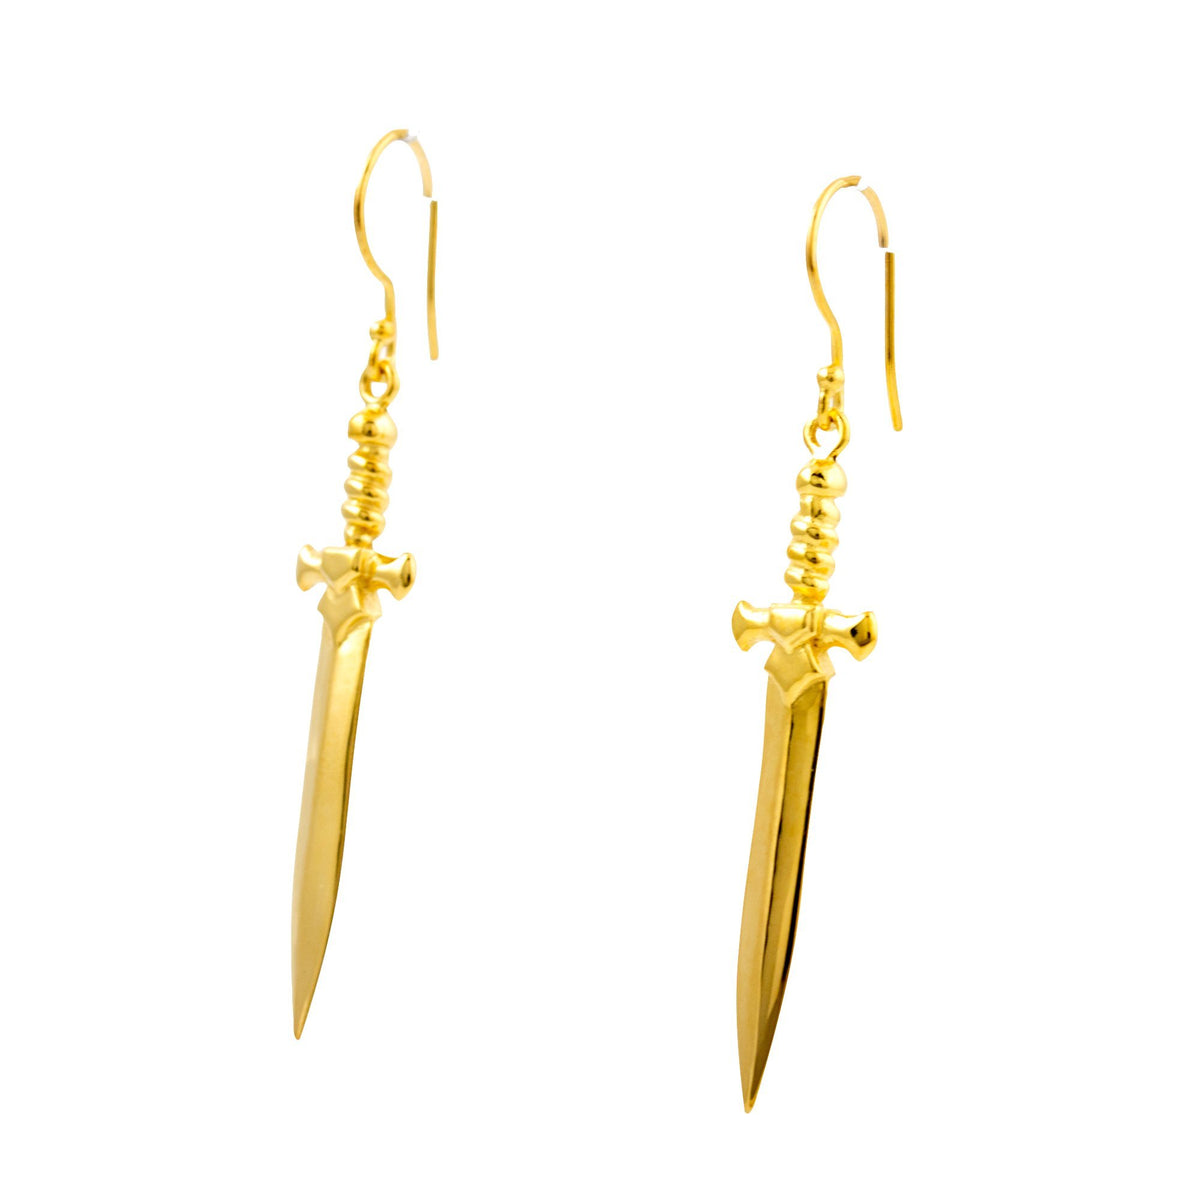 Gold Plate "Shortsword" Earrings - Kingdom Jewelry